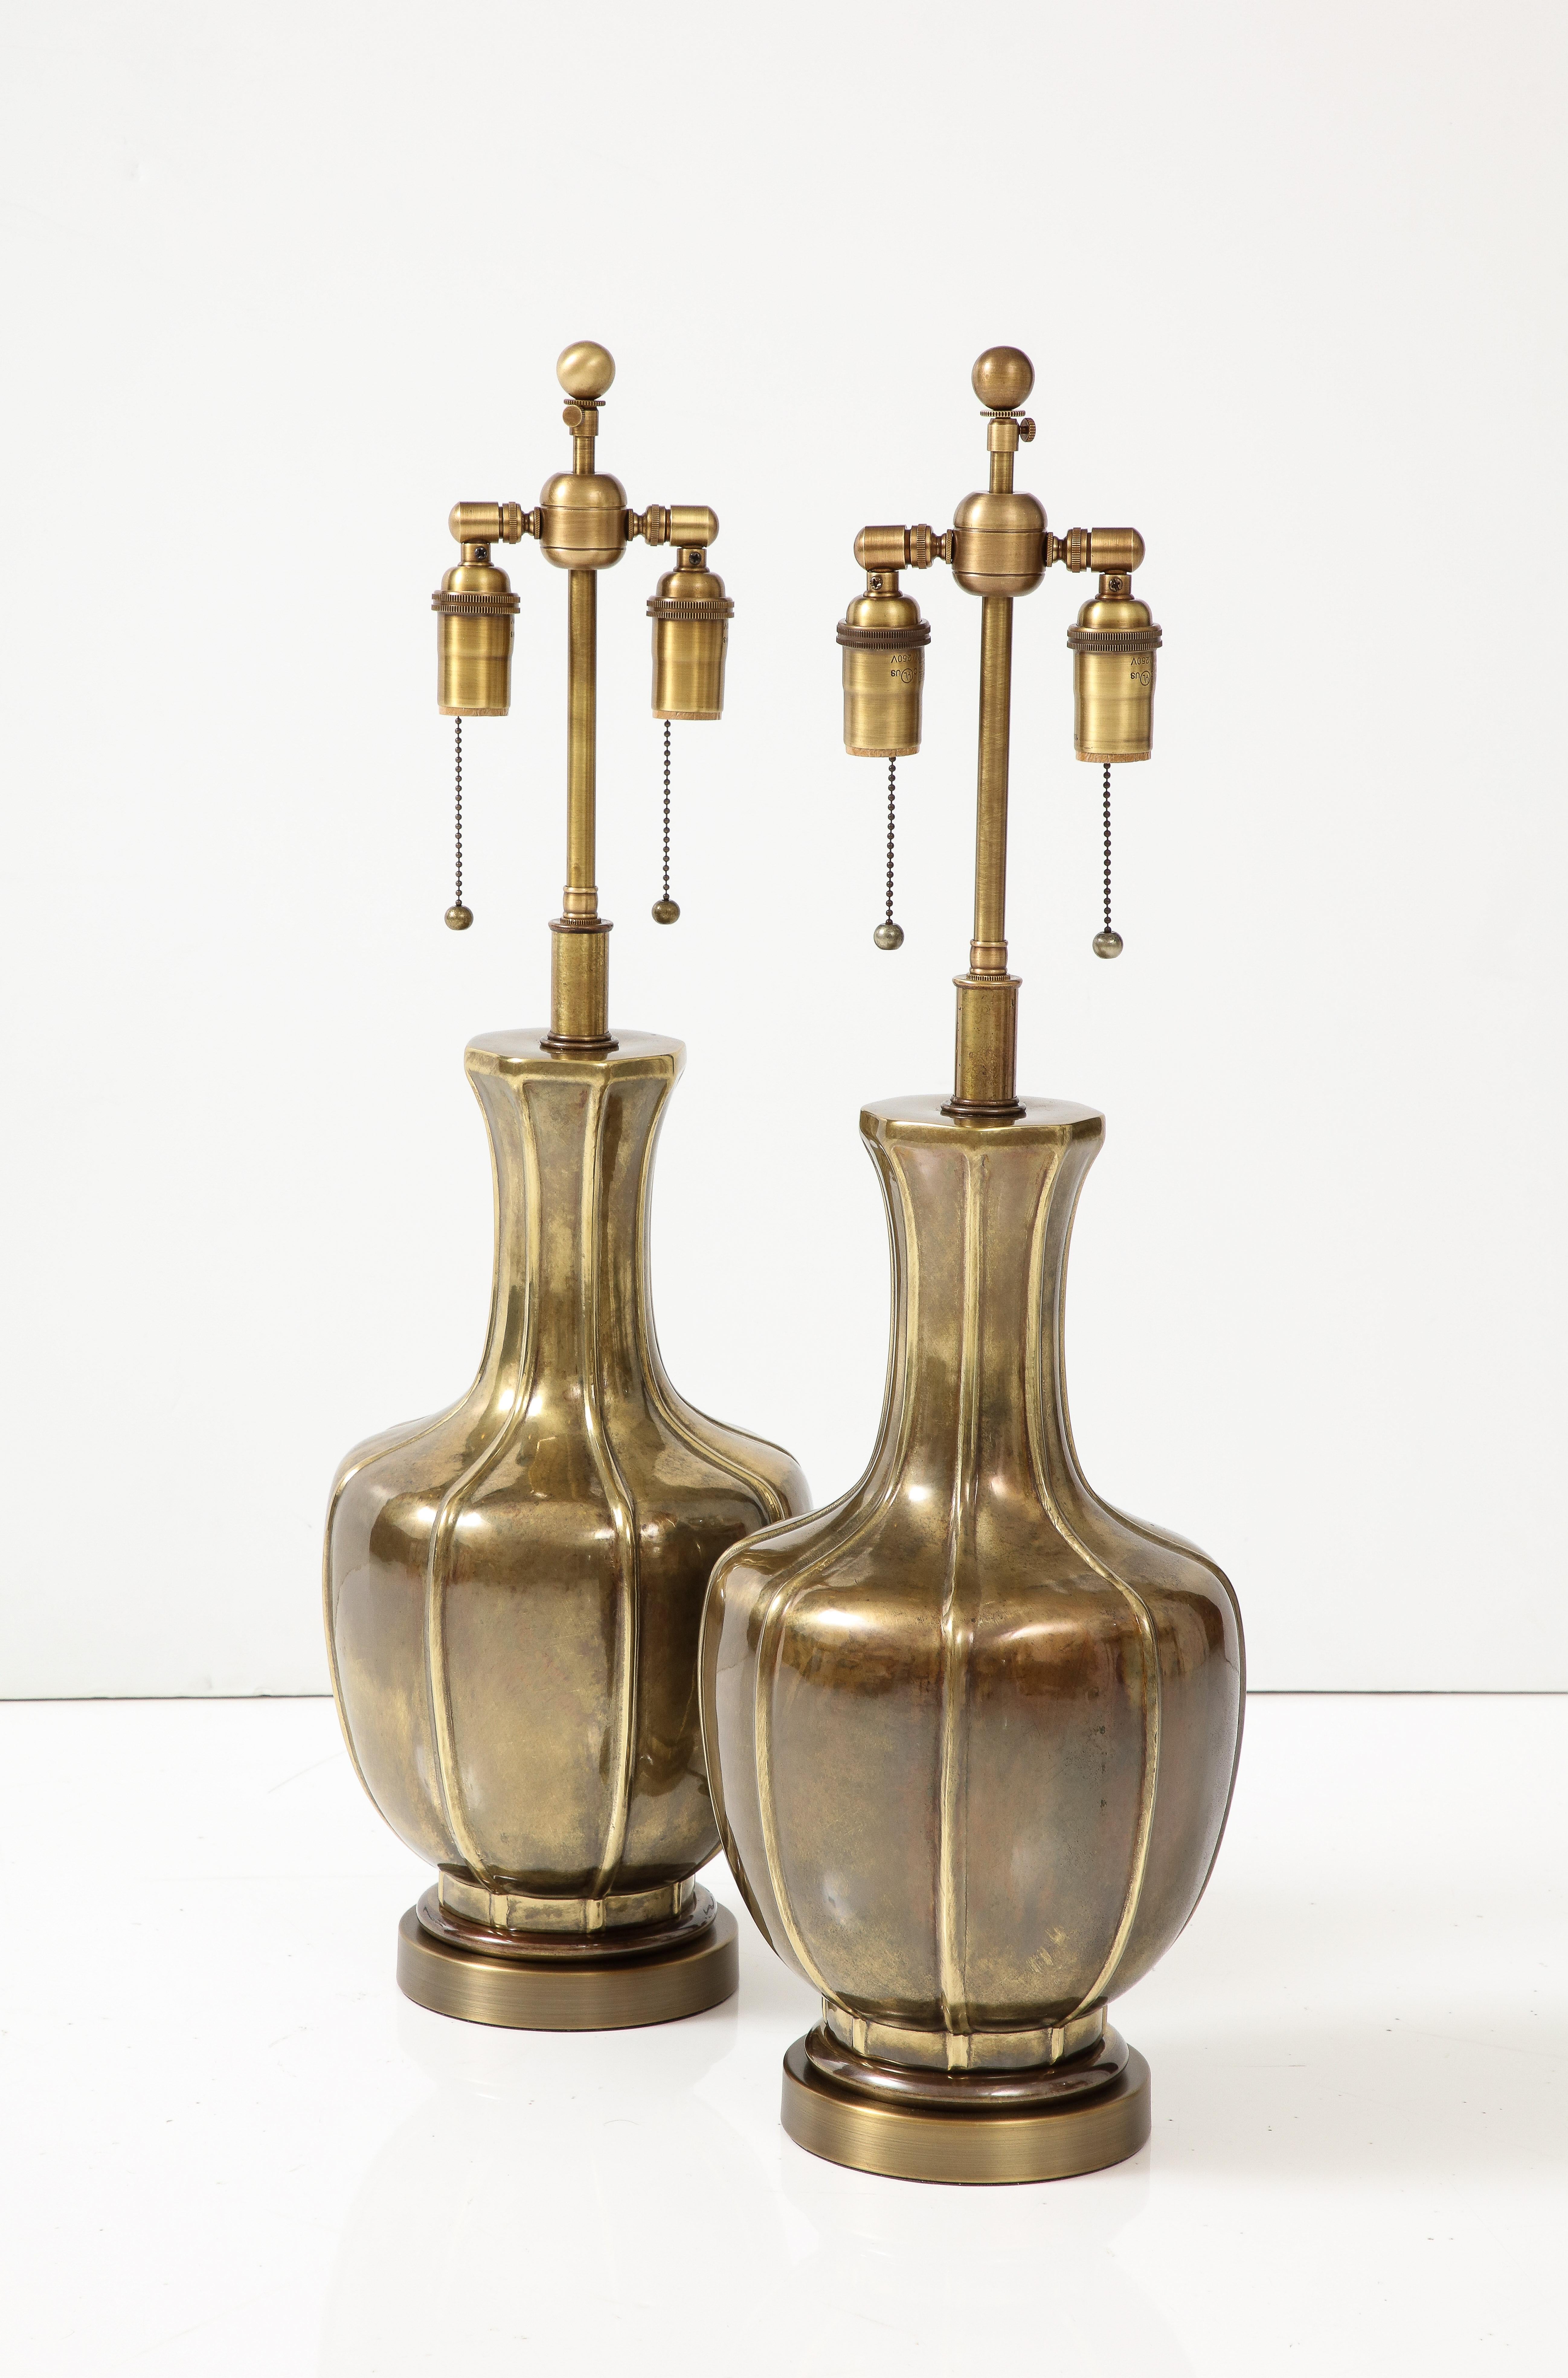 Ein Paar Lampen aus den 1960er Jahren mit Arts-and-Crafts-Einfluss von Frederick Cooper.
Die Lampen haben eine wunderbare gealterte Messing-Finish und sie wurden Newly neu verkabelt mit 
verstellbare Doppelcluster aus antikem Messing, die Glühbirnen